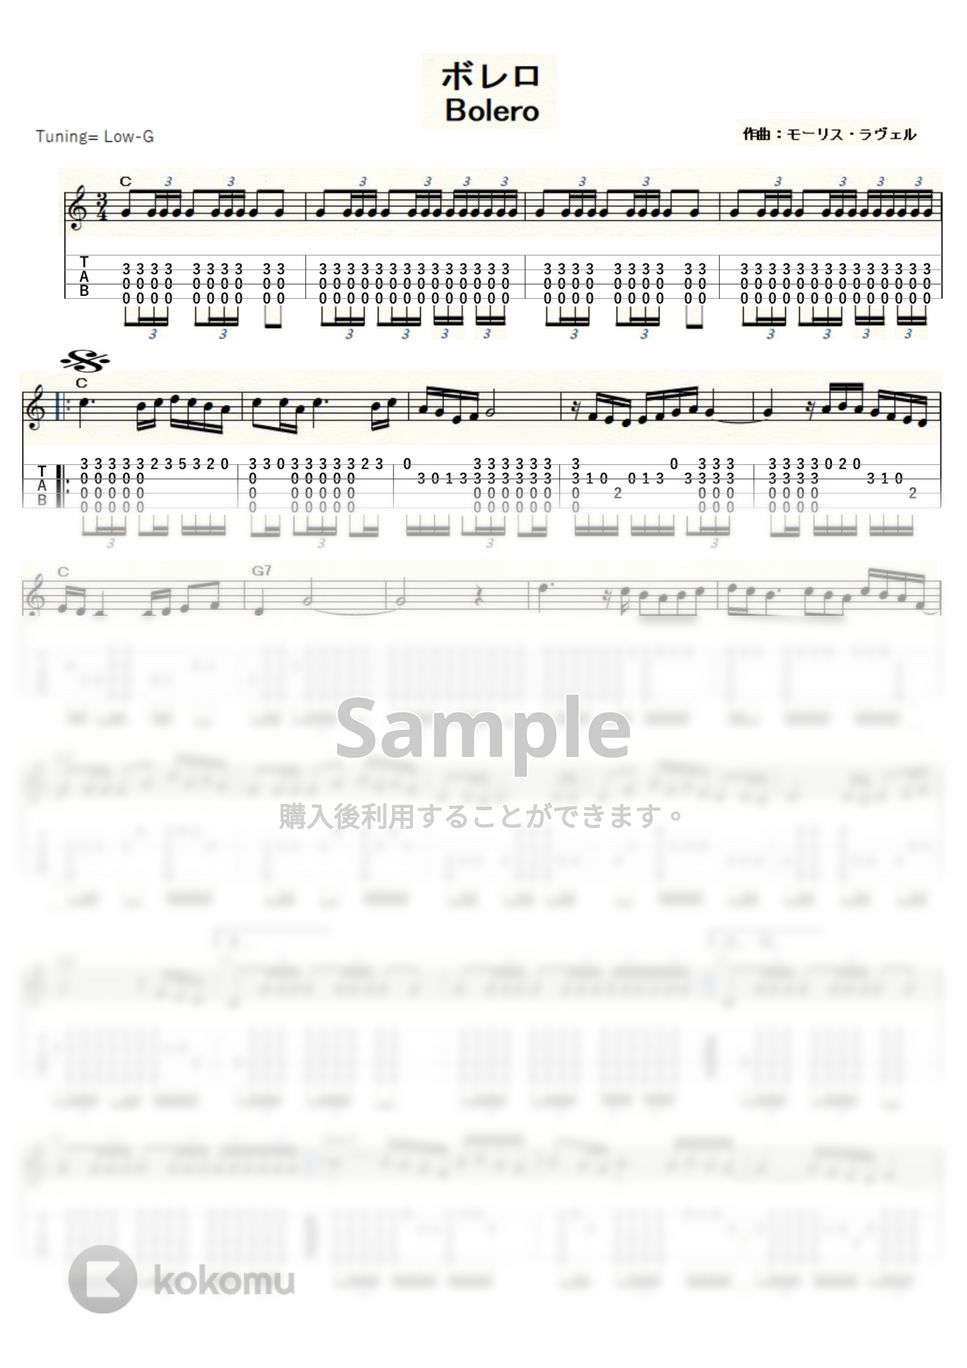 モーリス・ラヴェル - ボレロ (ｳｸﾚﾚｿﾛ/Low-G/中級) by ukulelepapa